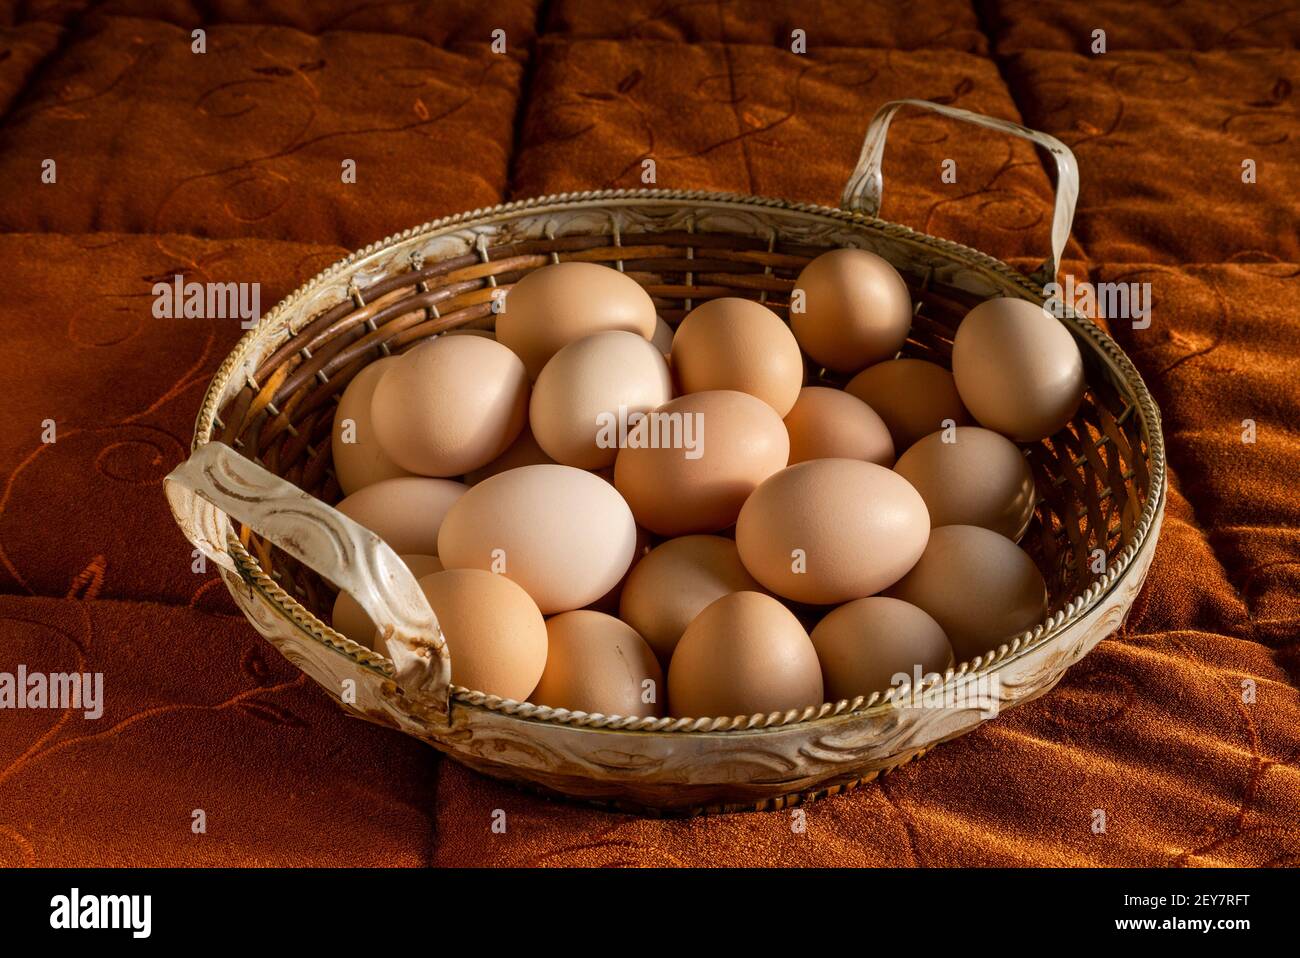 Italie : panier d'œufs fraîchement cueillis dans le coop de poulet. Banque D'Images